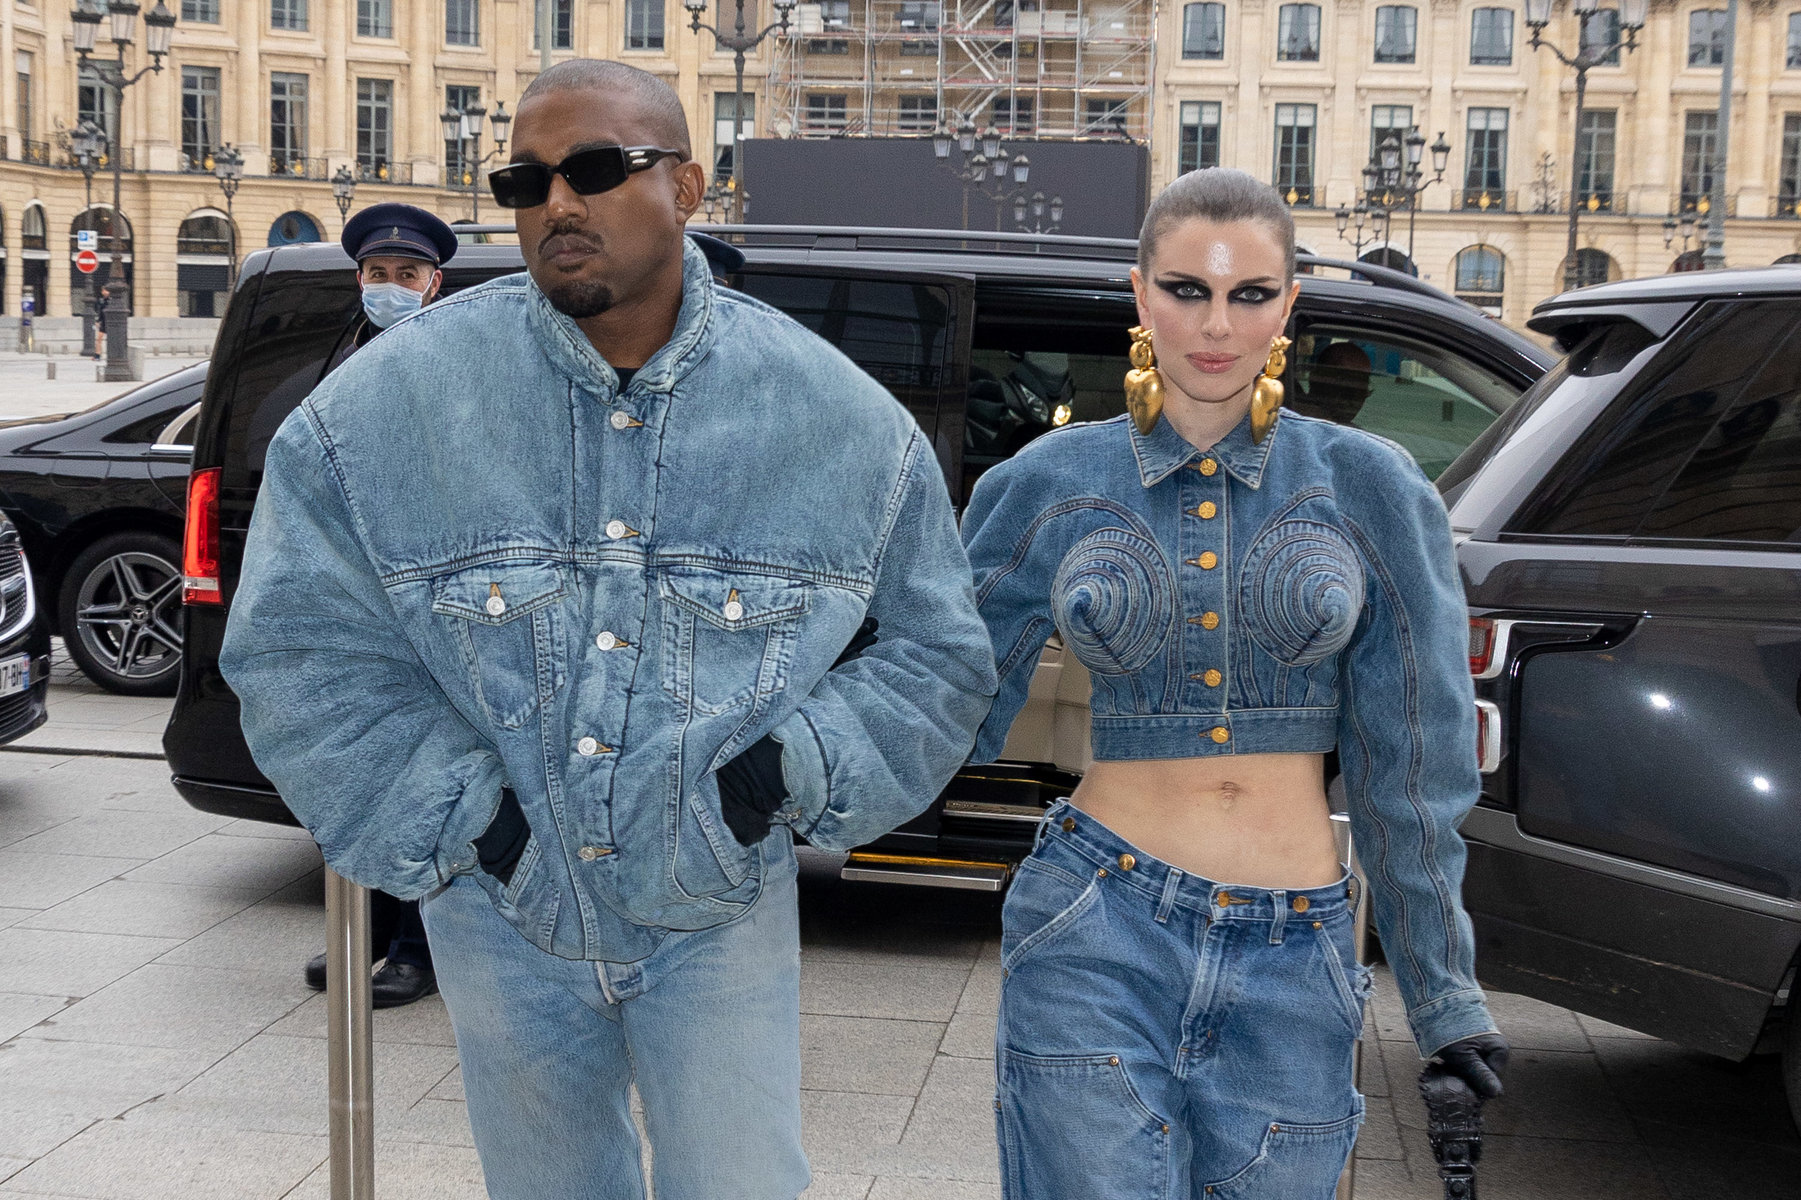 Ποια Kim Kardashian; Ο Kanye West σχεδιάζει να κάνει πρόταση γάμου στην Julia Fox